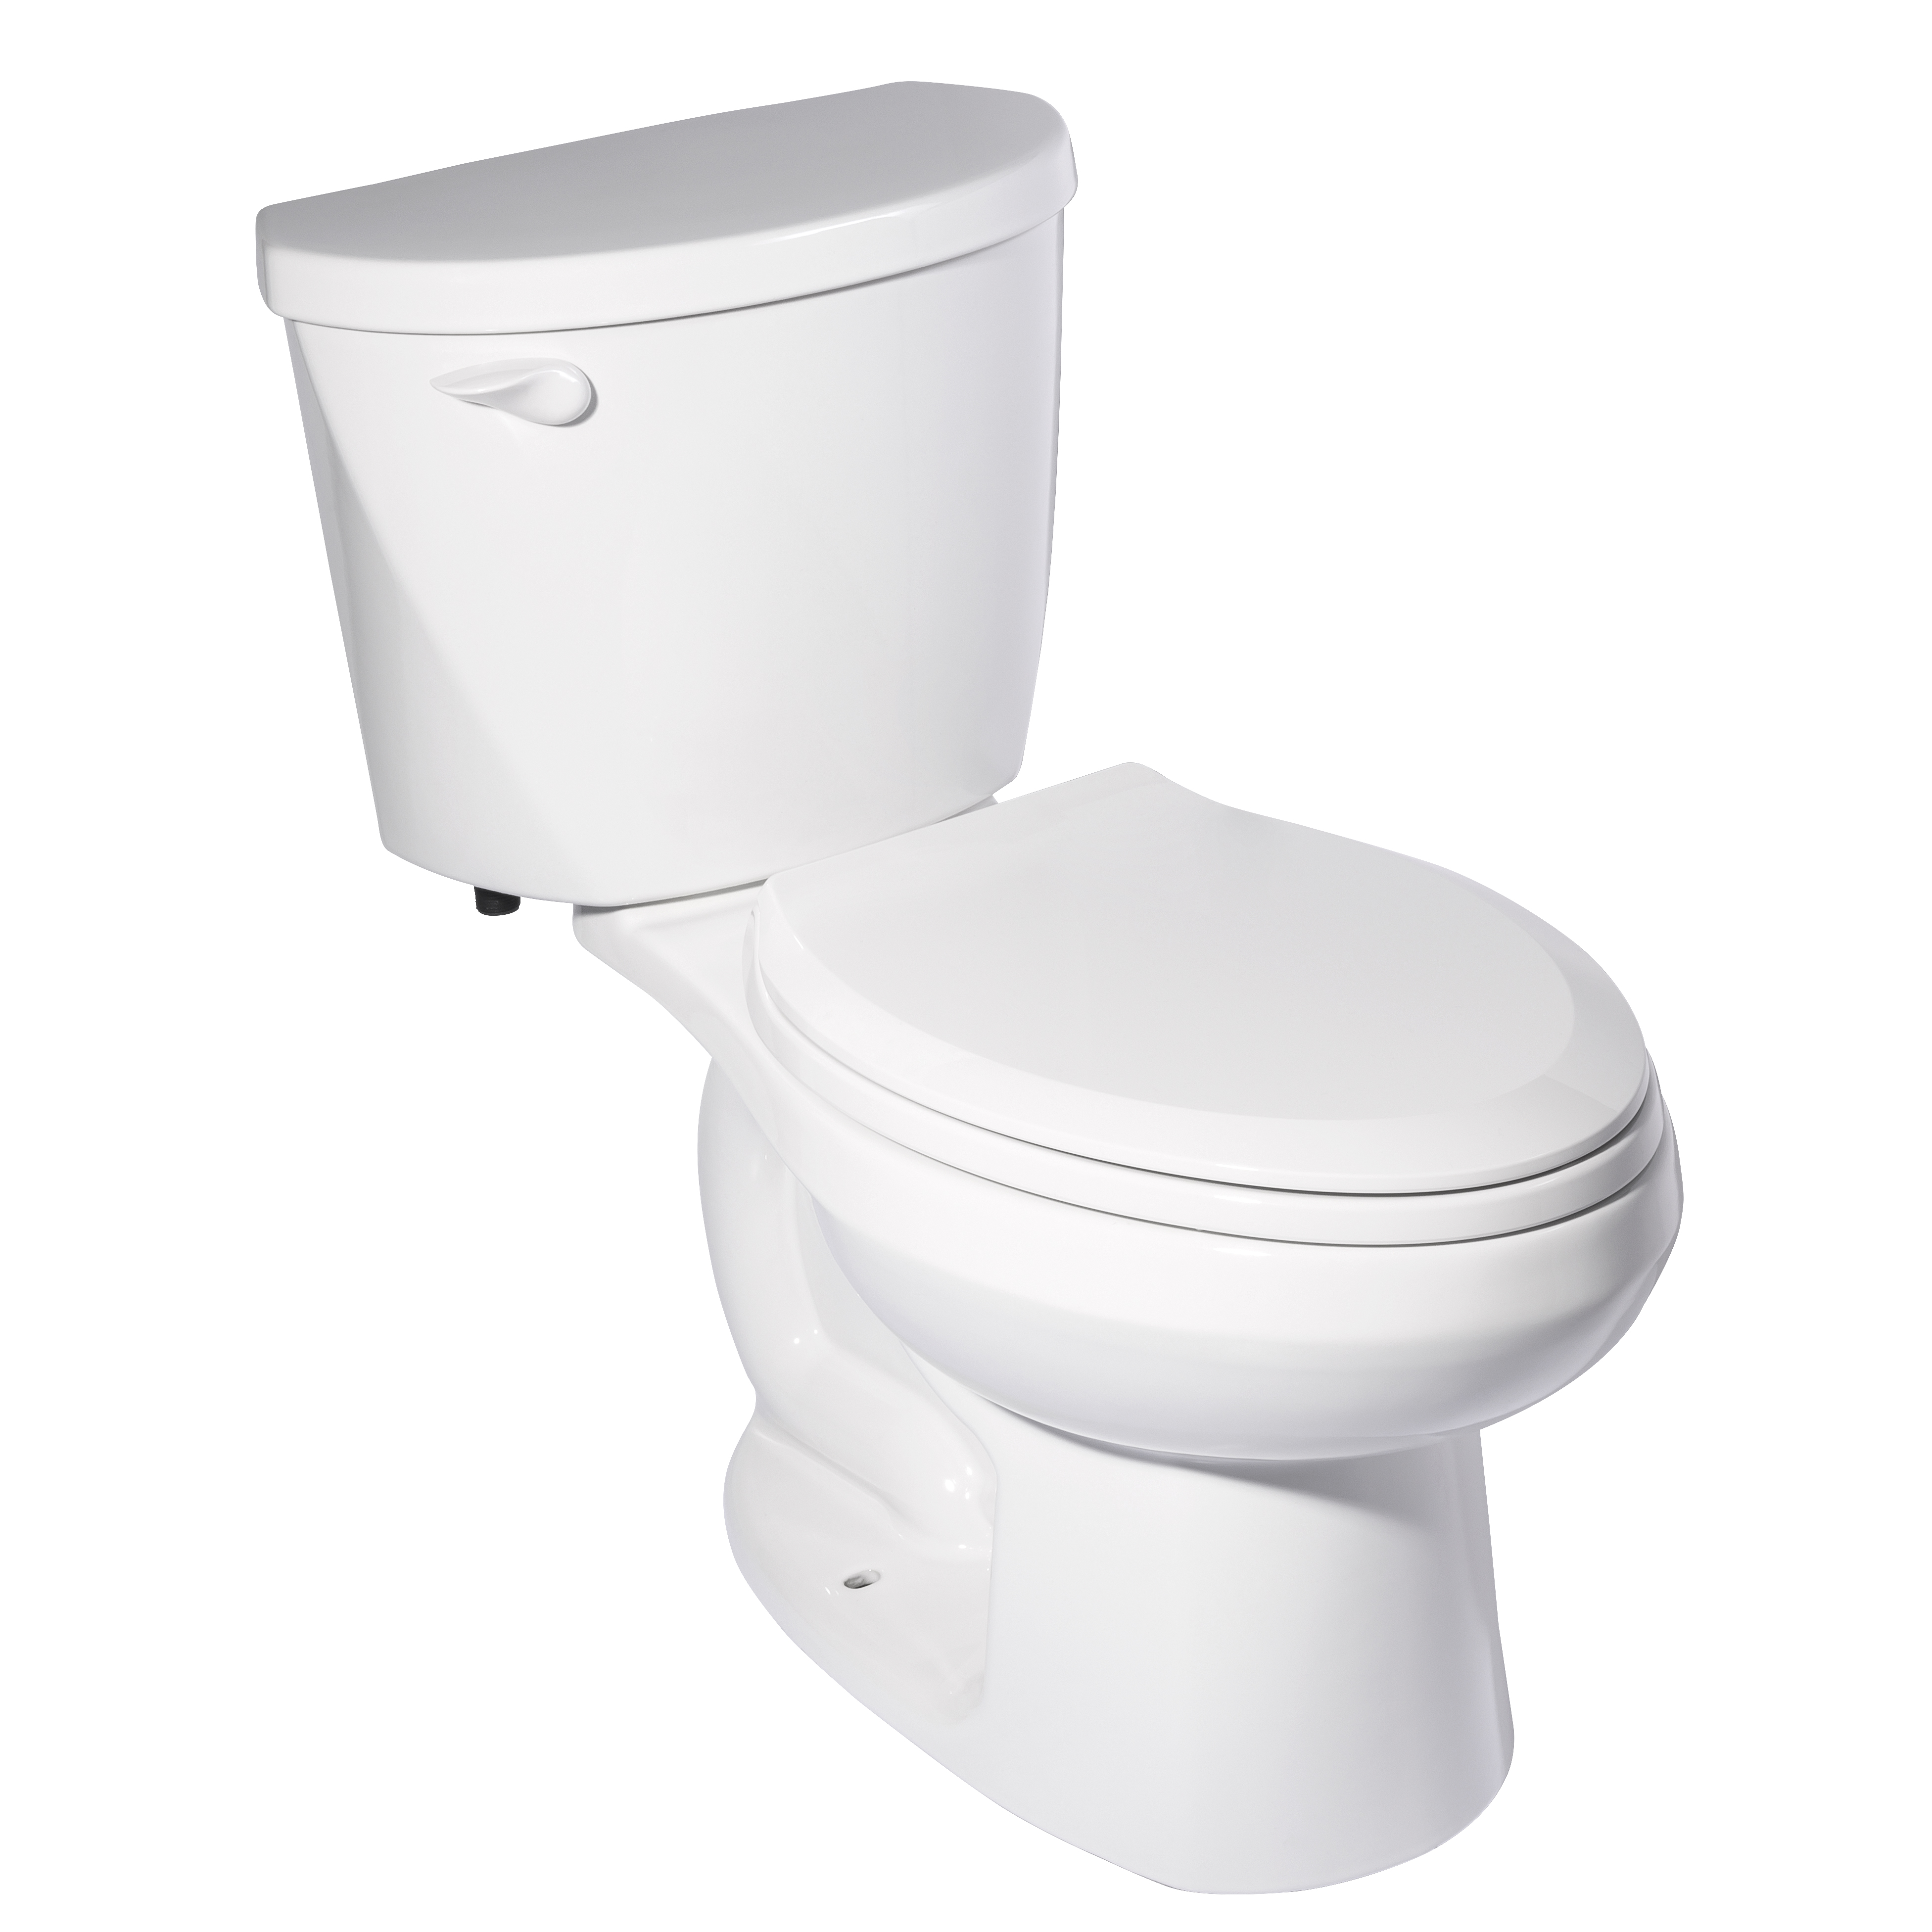 Toilette Mainstream complète allongée à hauteur régulière, deux pièces, 1,28 gpc/4,8 Lpc, avec siège et réservoir doublé